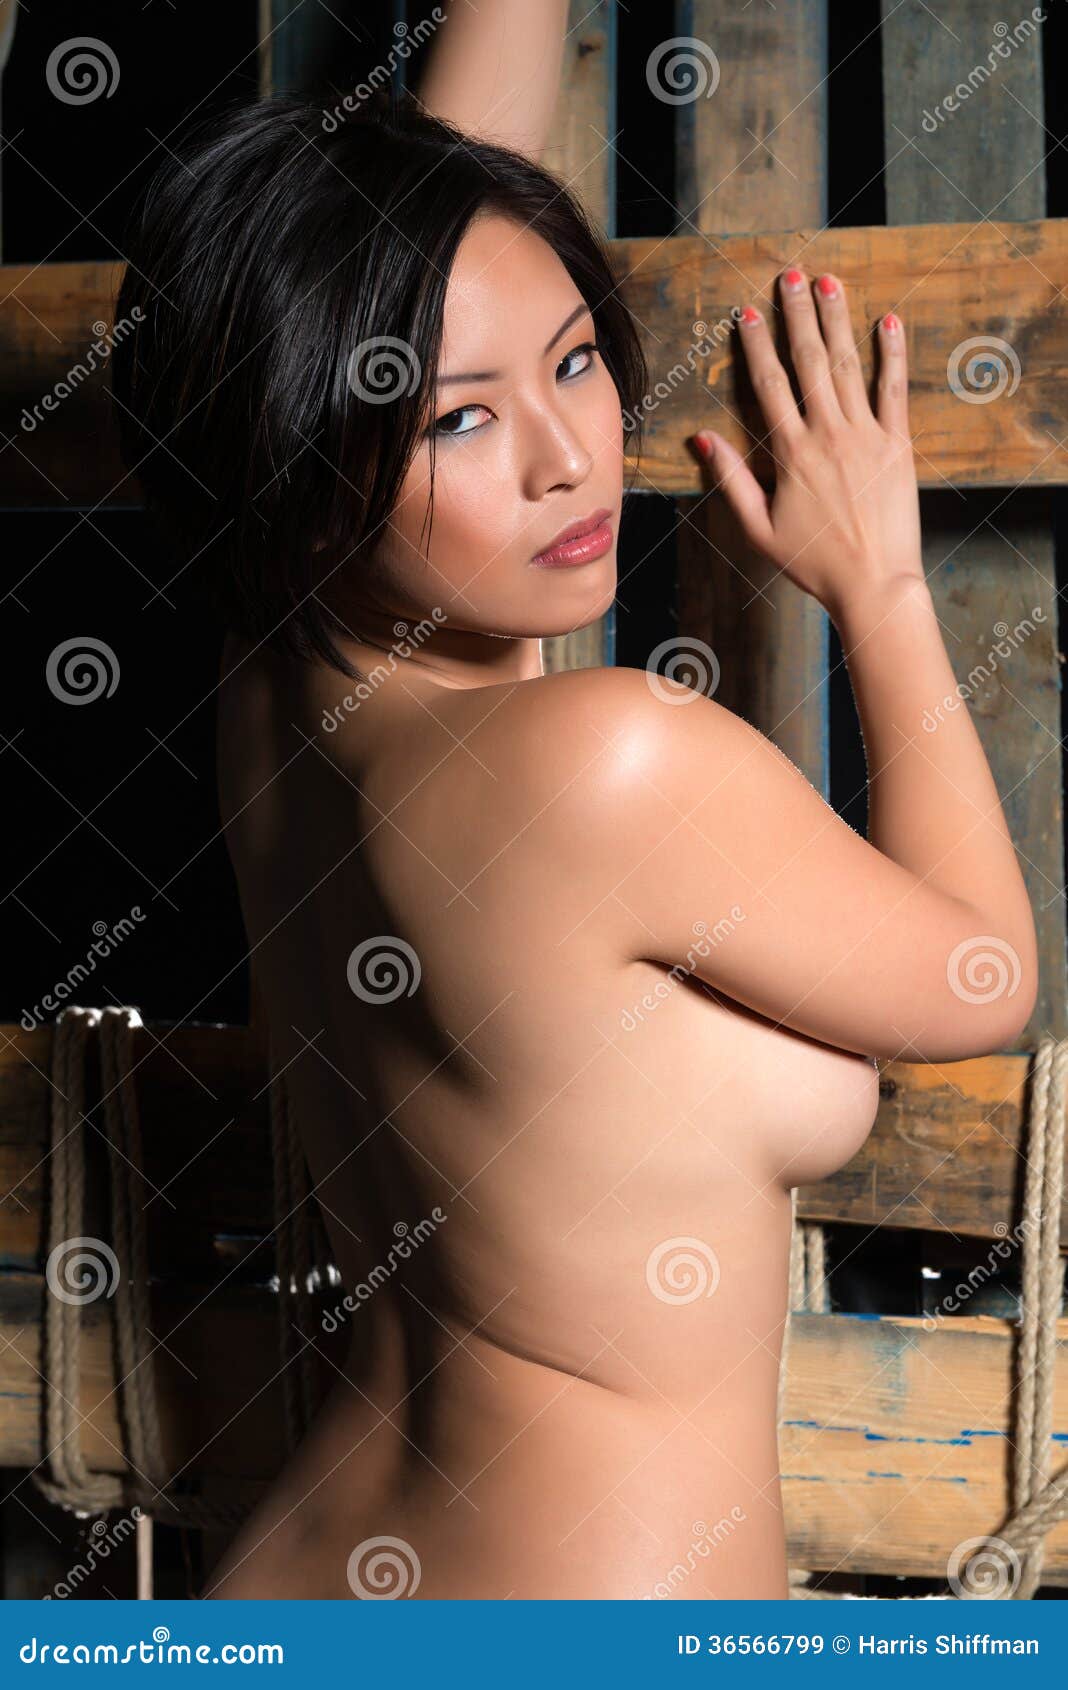 arjay nolasco add photo free nude chinese girls